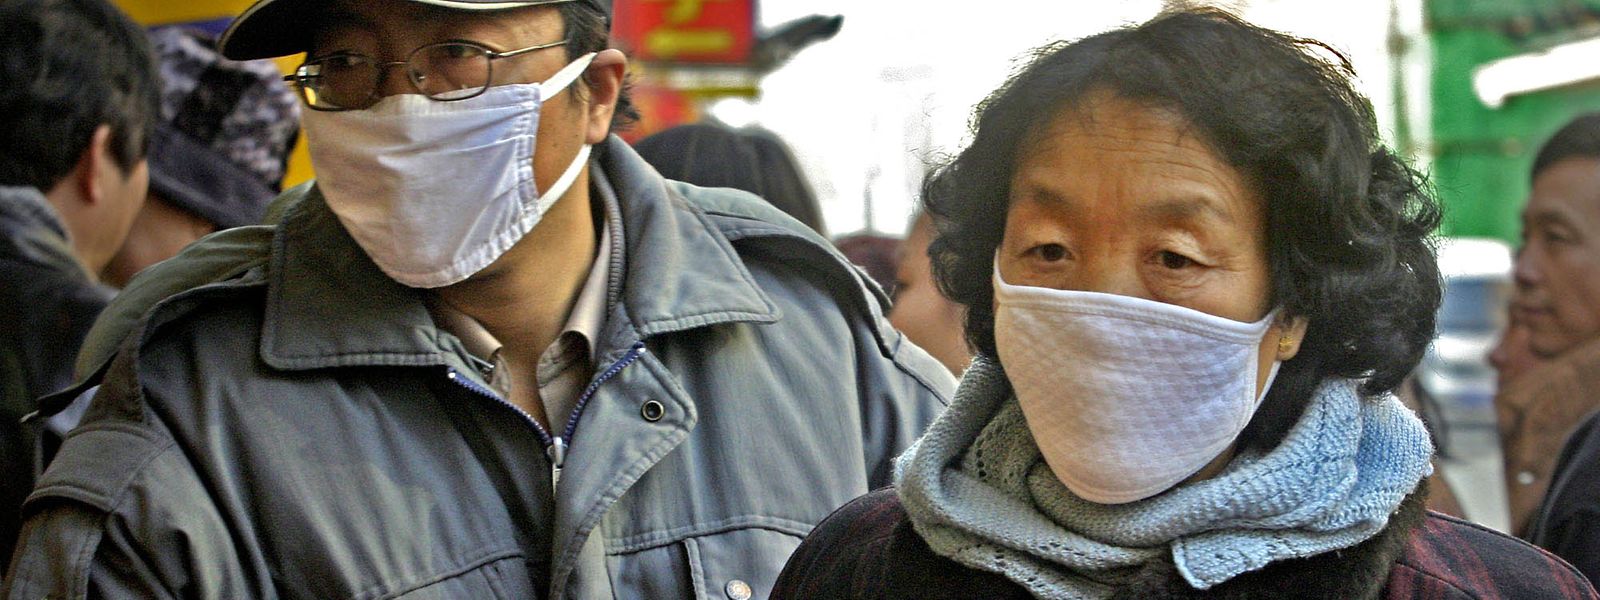 Archivfoto von 2003: Passanten auf den Straßen von Peking auf der Höhe der Sars-Pandemie.